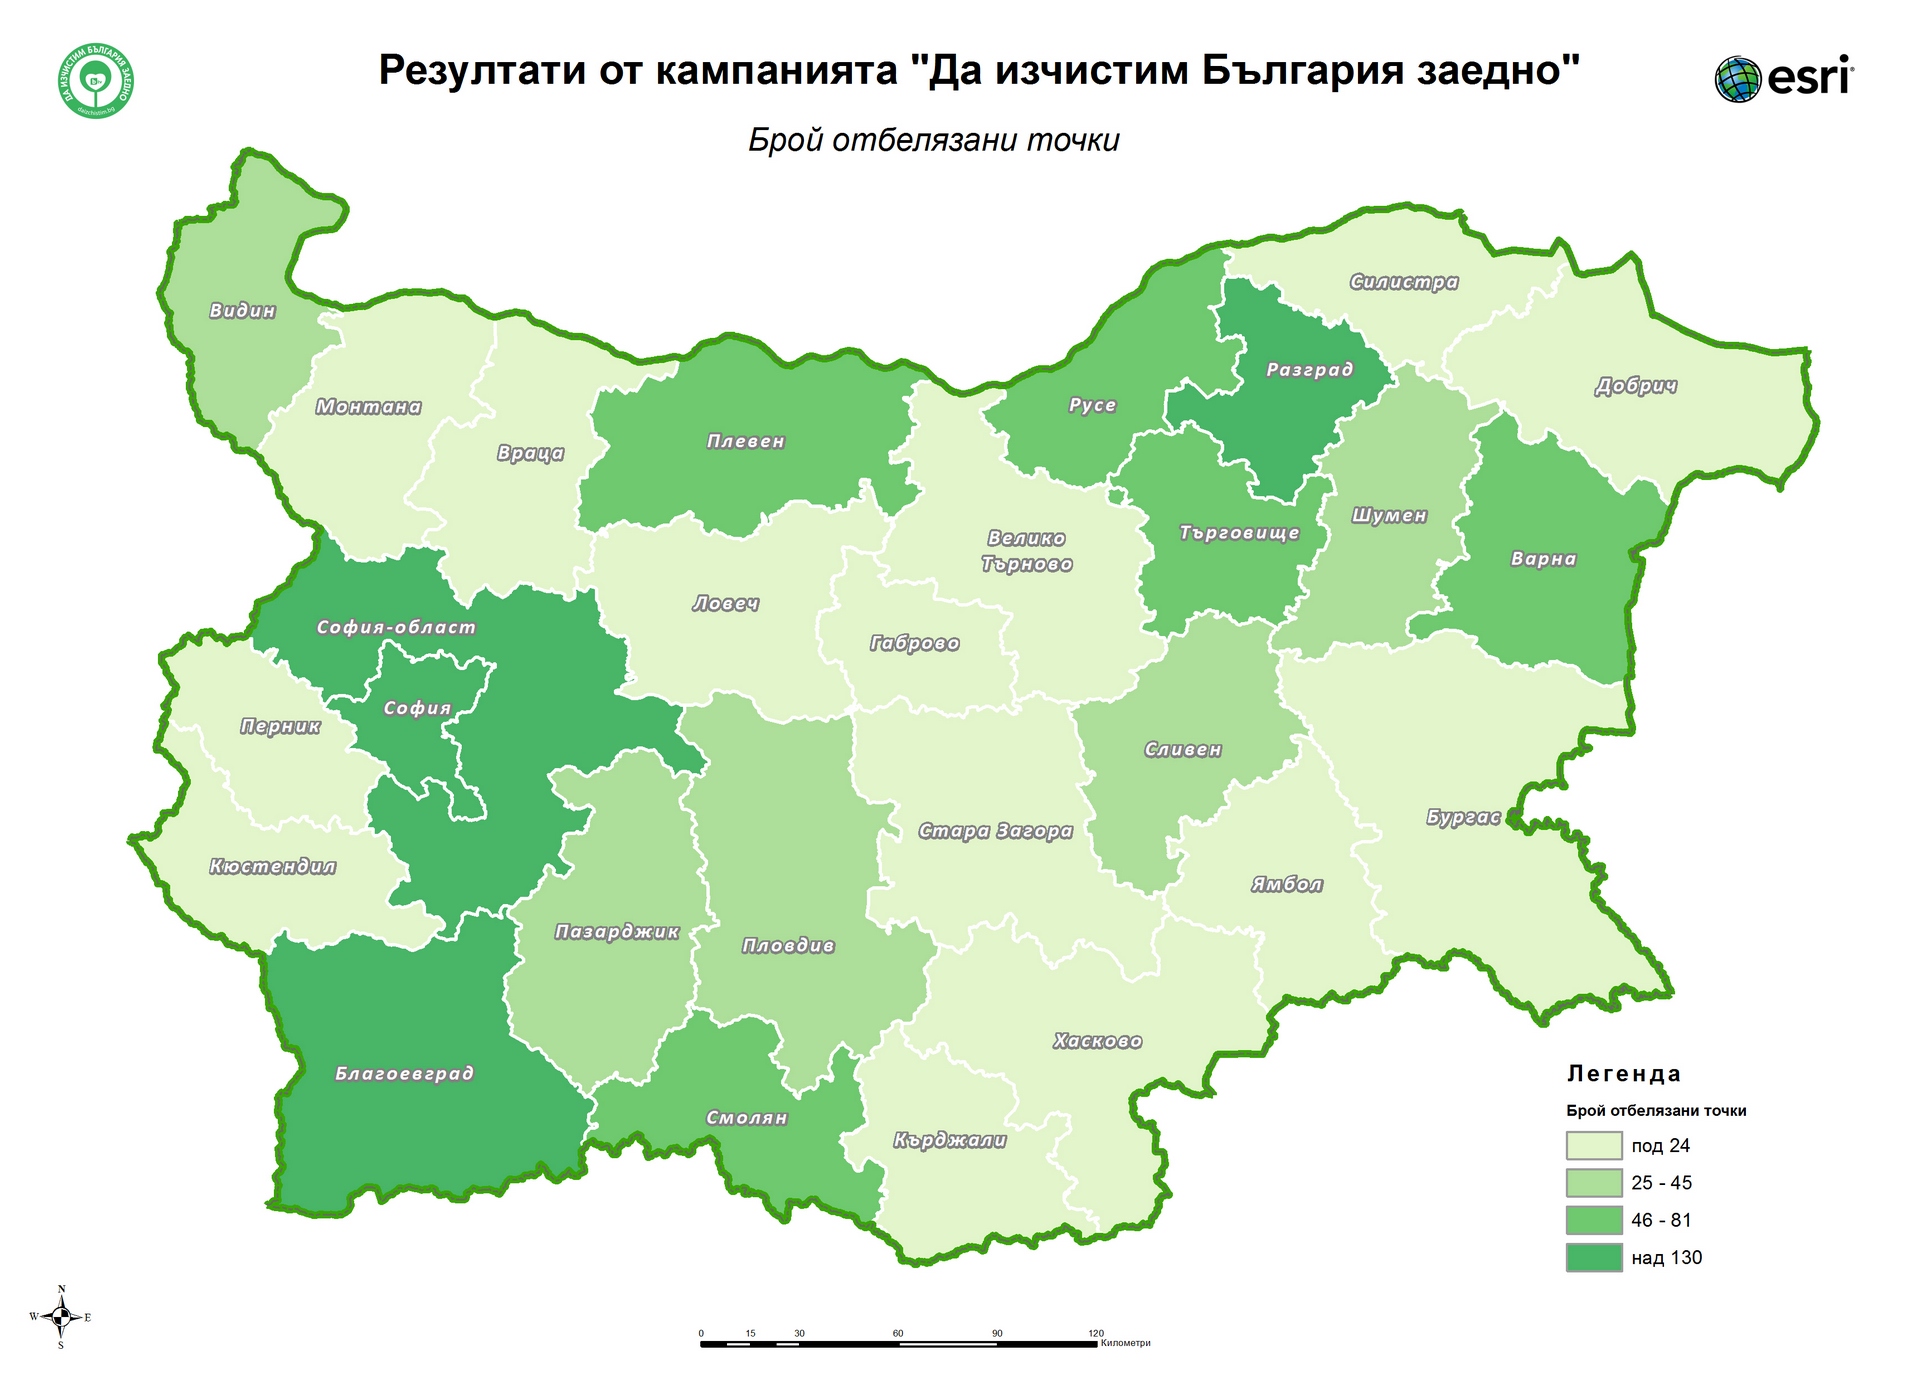 ГИС технология подпомага инициативата Да изчистим България Сред областите събрали най много